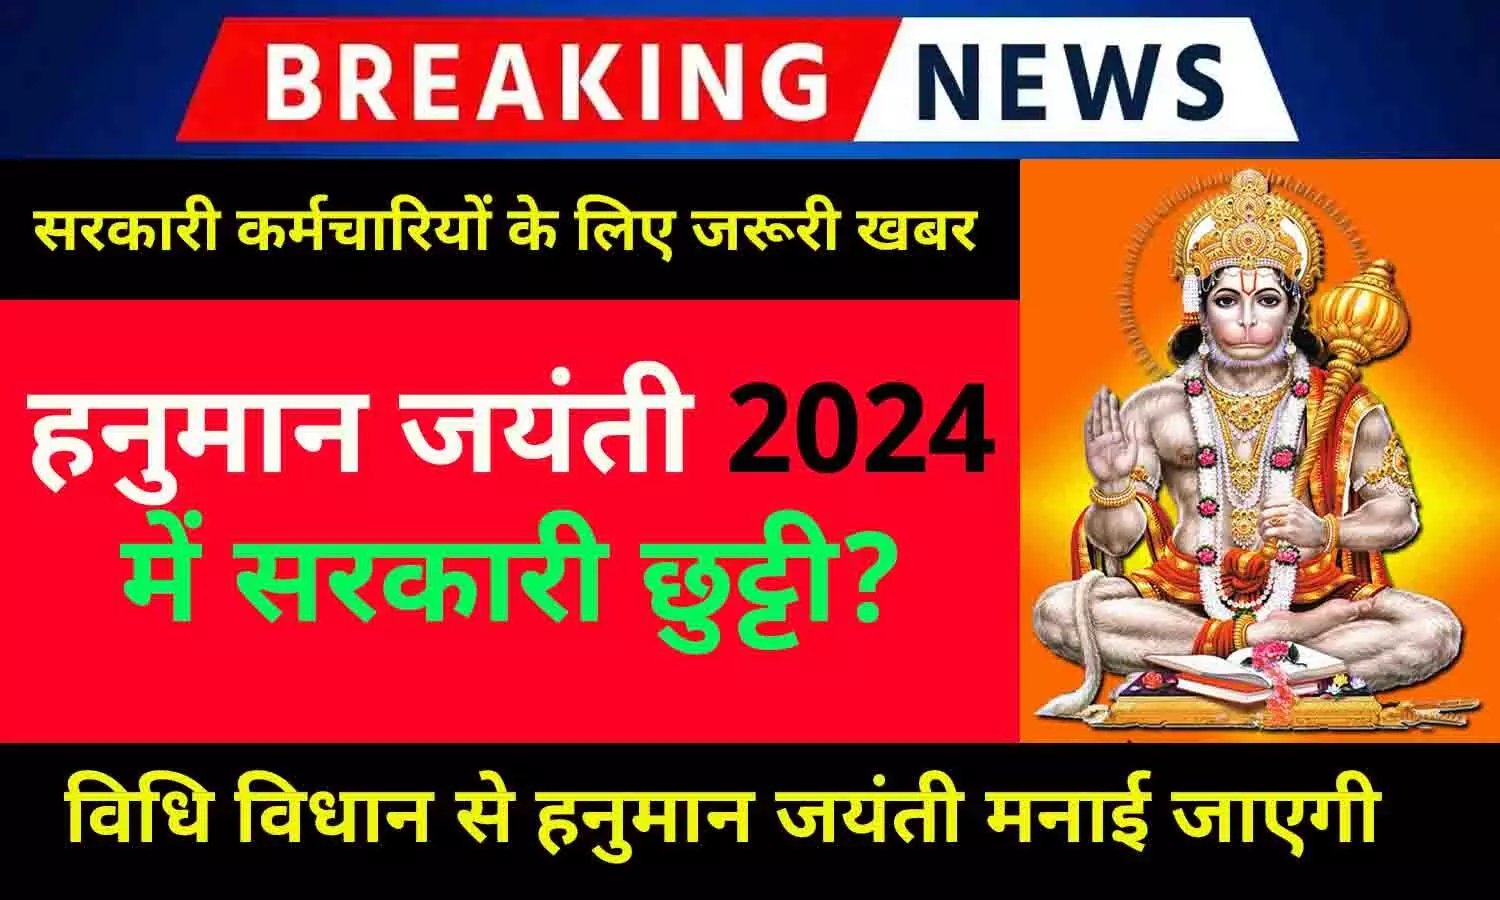 Hanuman Jayanti Govt Holiday 23 April 2024: हनुमान जयंती 2024 में सरकारी छुट्टी रहेगी या नहीं? जानें अपडेट